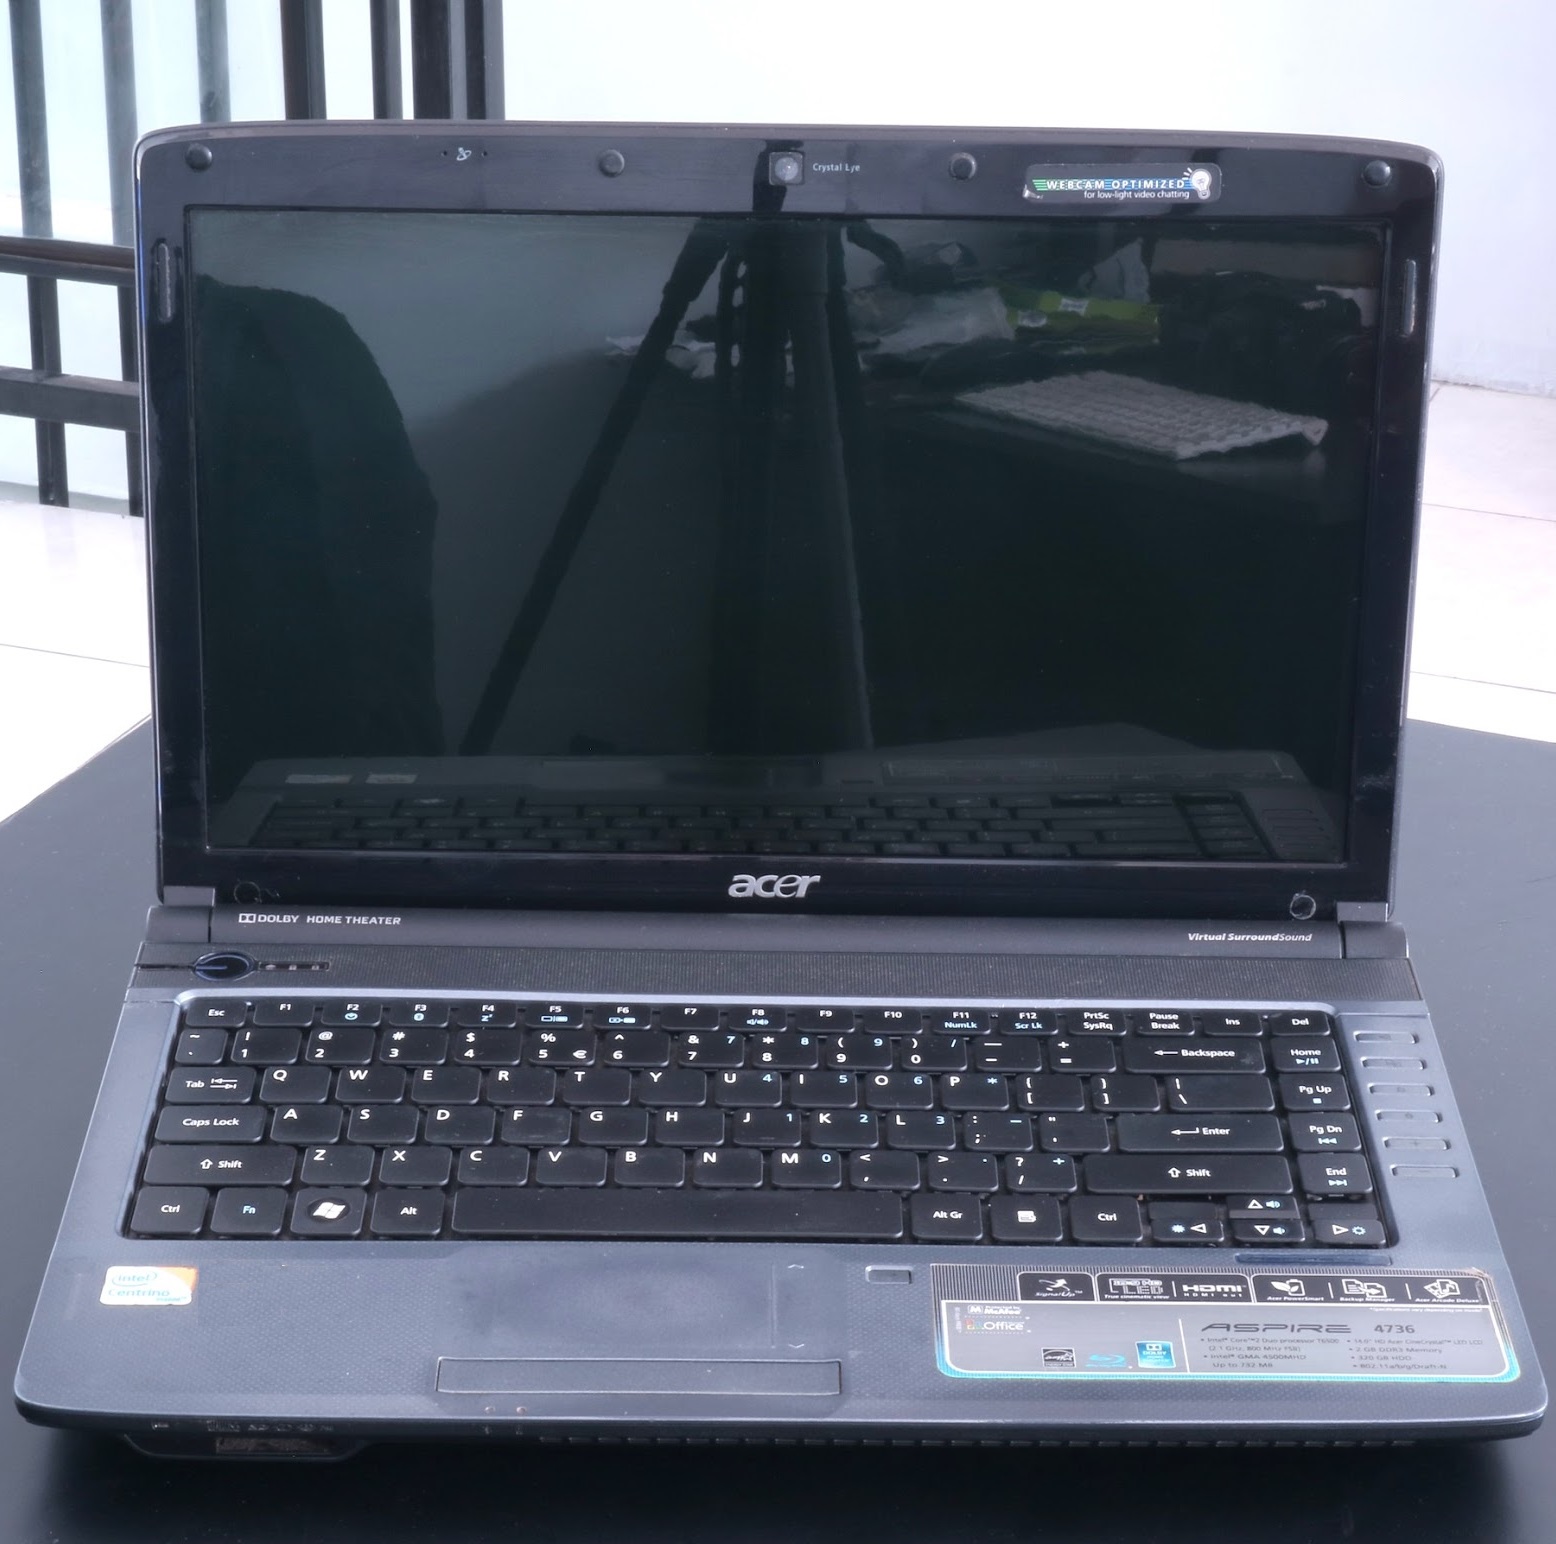 Jual Laptop Acer Aspire 4736 Core2Duo Bekas | Jual Beli Laptop Bekas ...